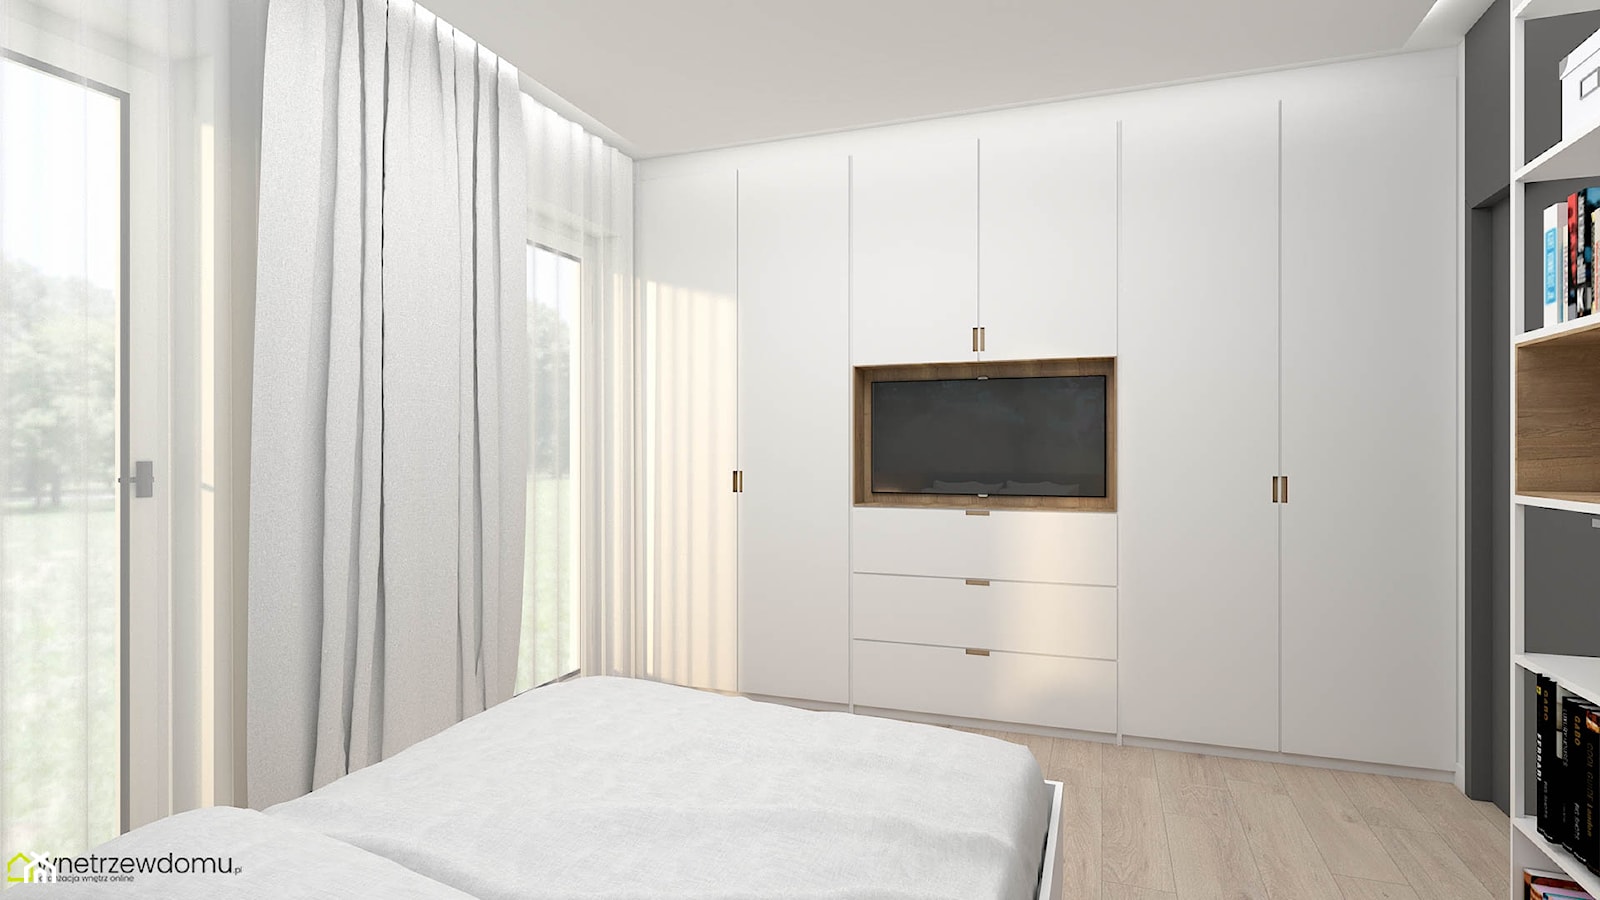 Jasna, nowoczesna sypialnia z dużą zabudową meblową - zdjęcie od wnetrzewdomu - Homebook